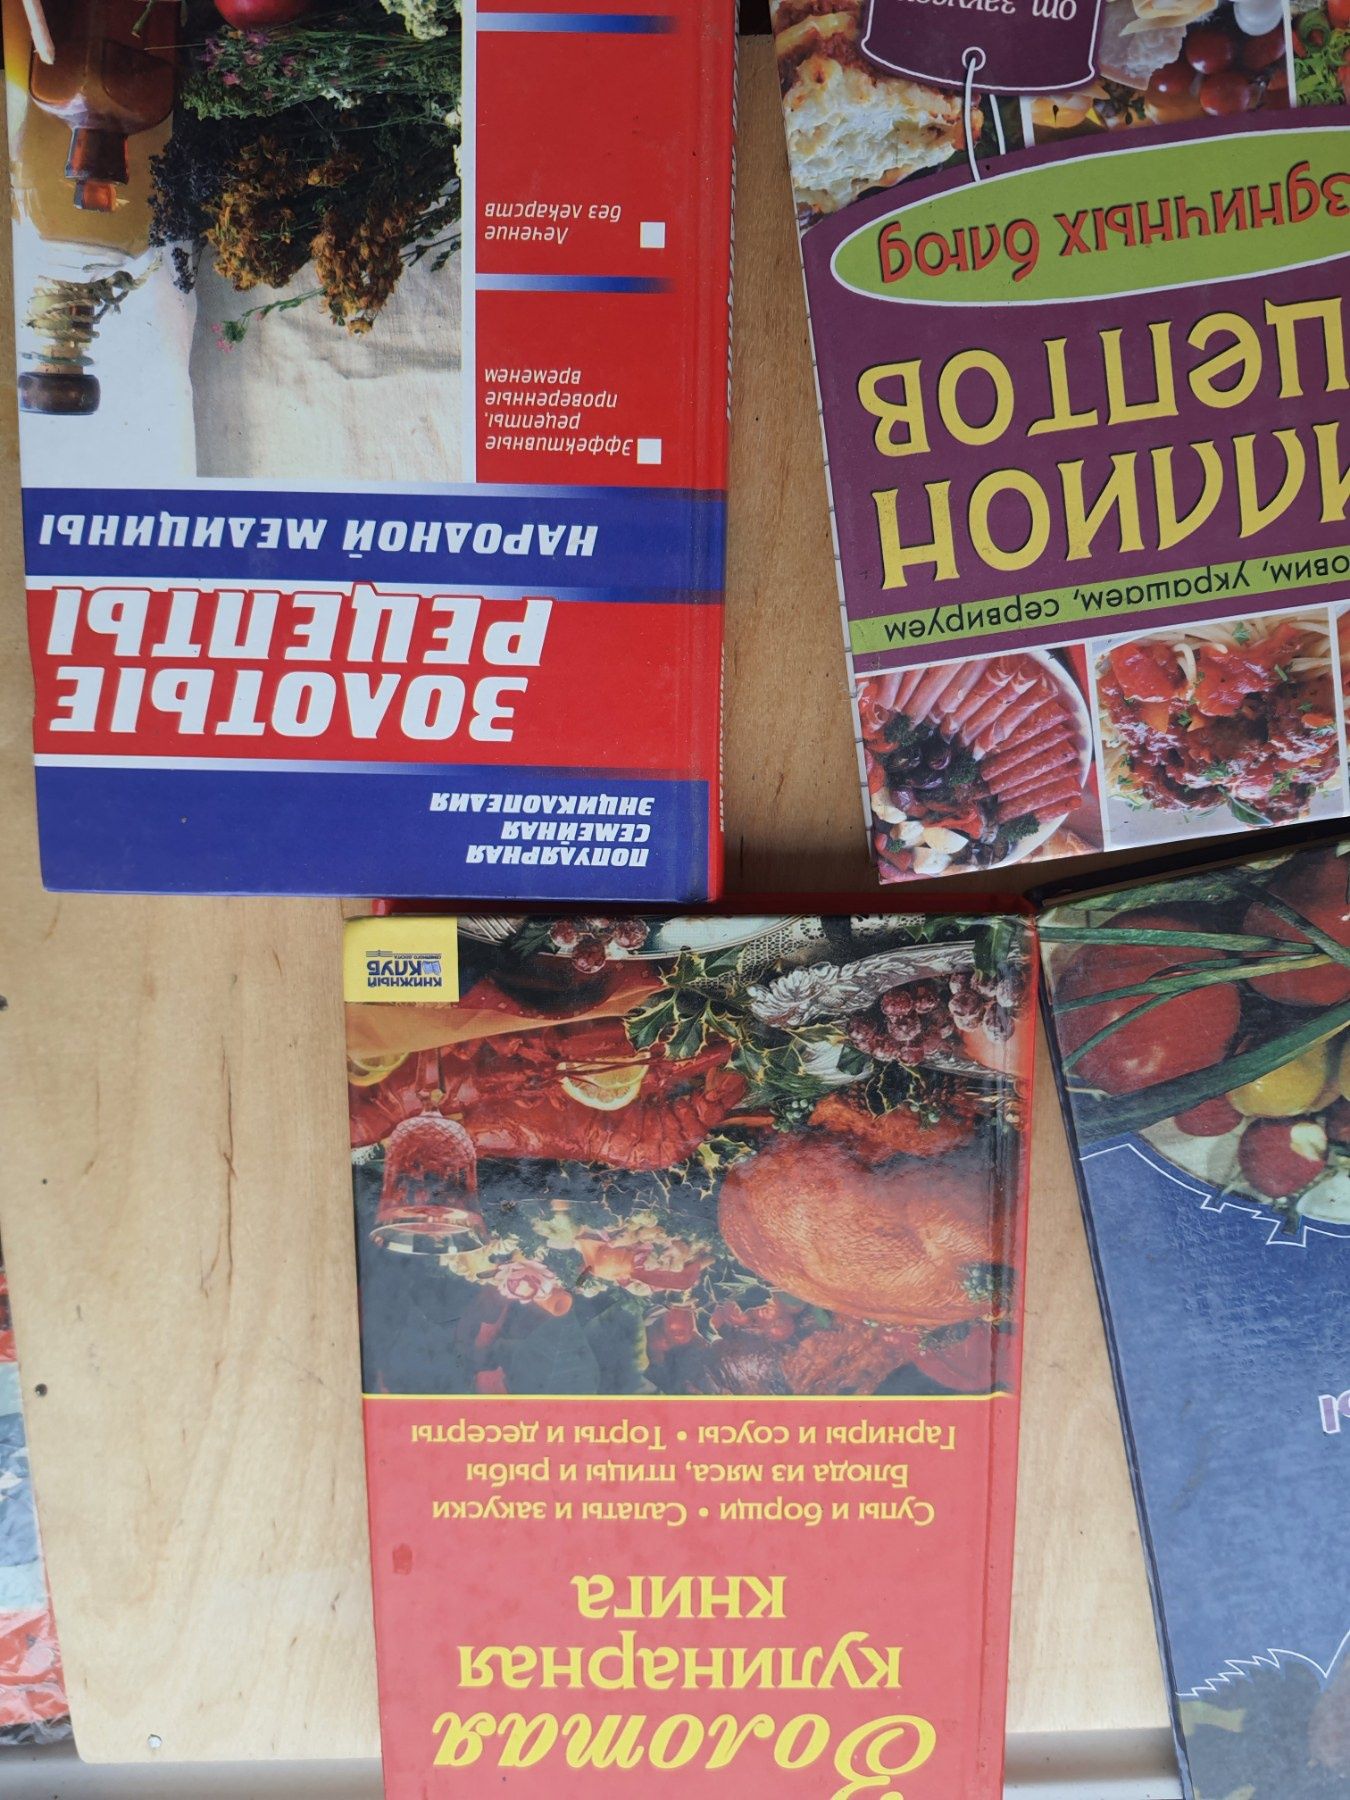 Книги рецептів кулинарные, блины, вафли, рецепты здоровья